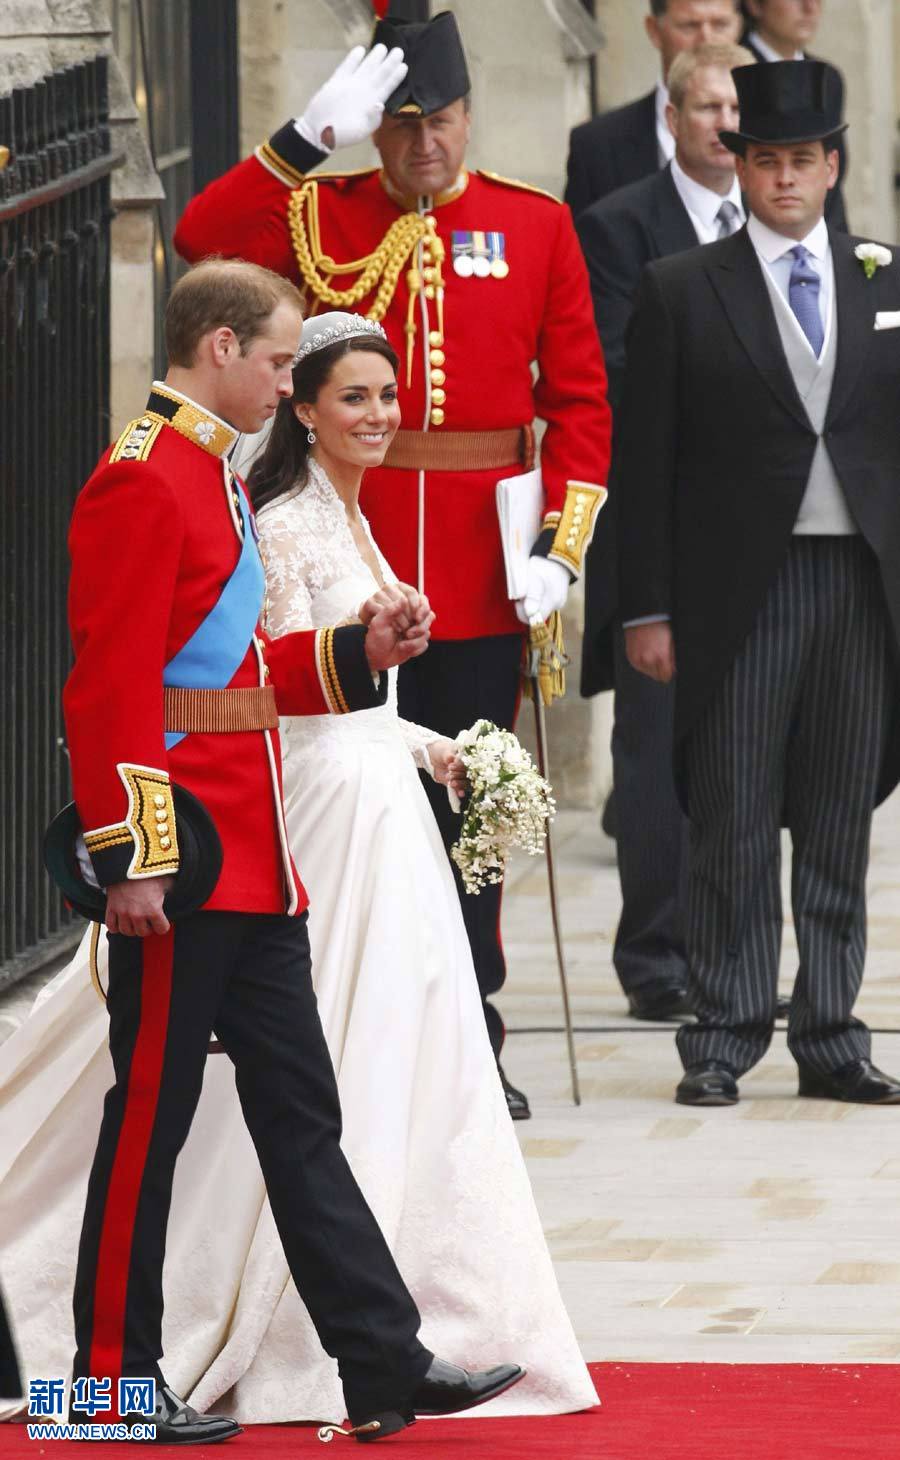 英国威廉王子大婚精彩大图回顾 - 安妮图娃 - 读图时代